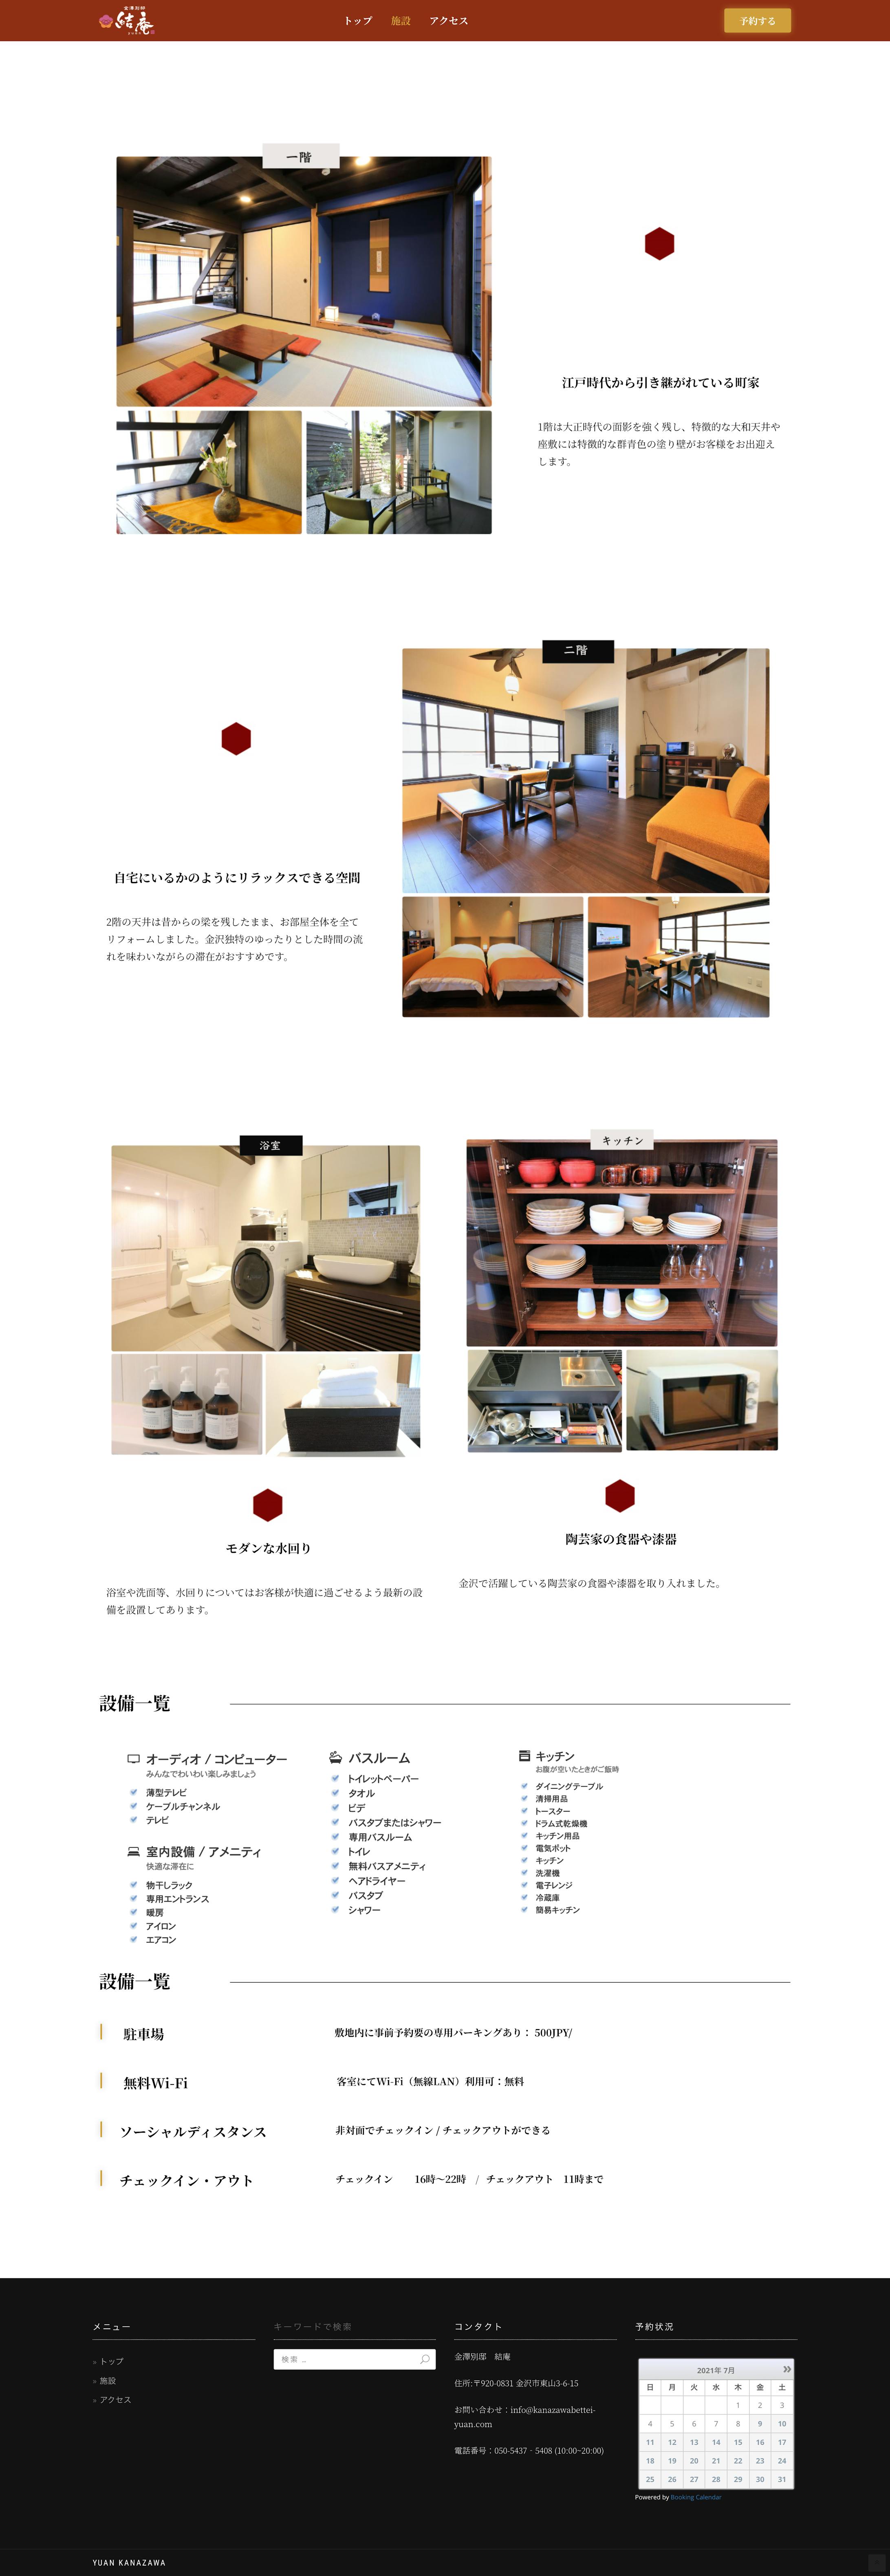 金澤別邸「結庵」公式ホームページ-2